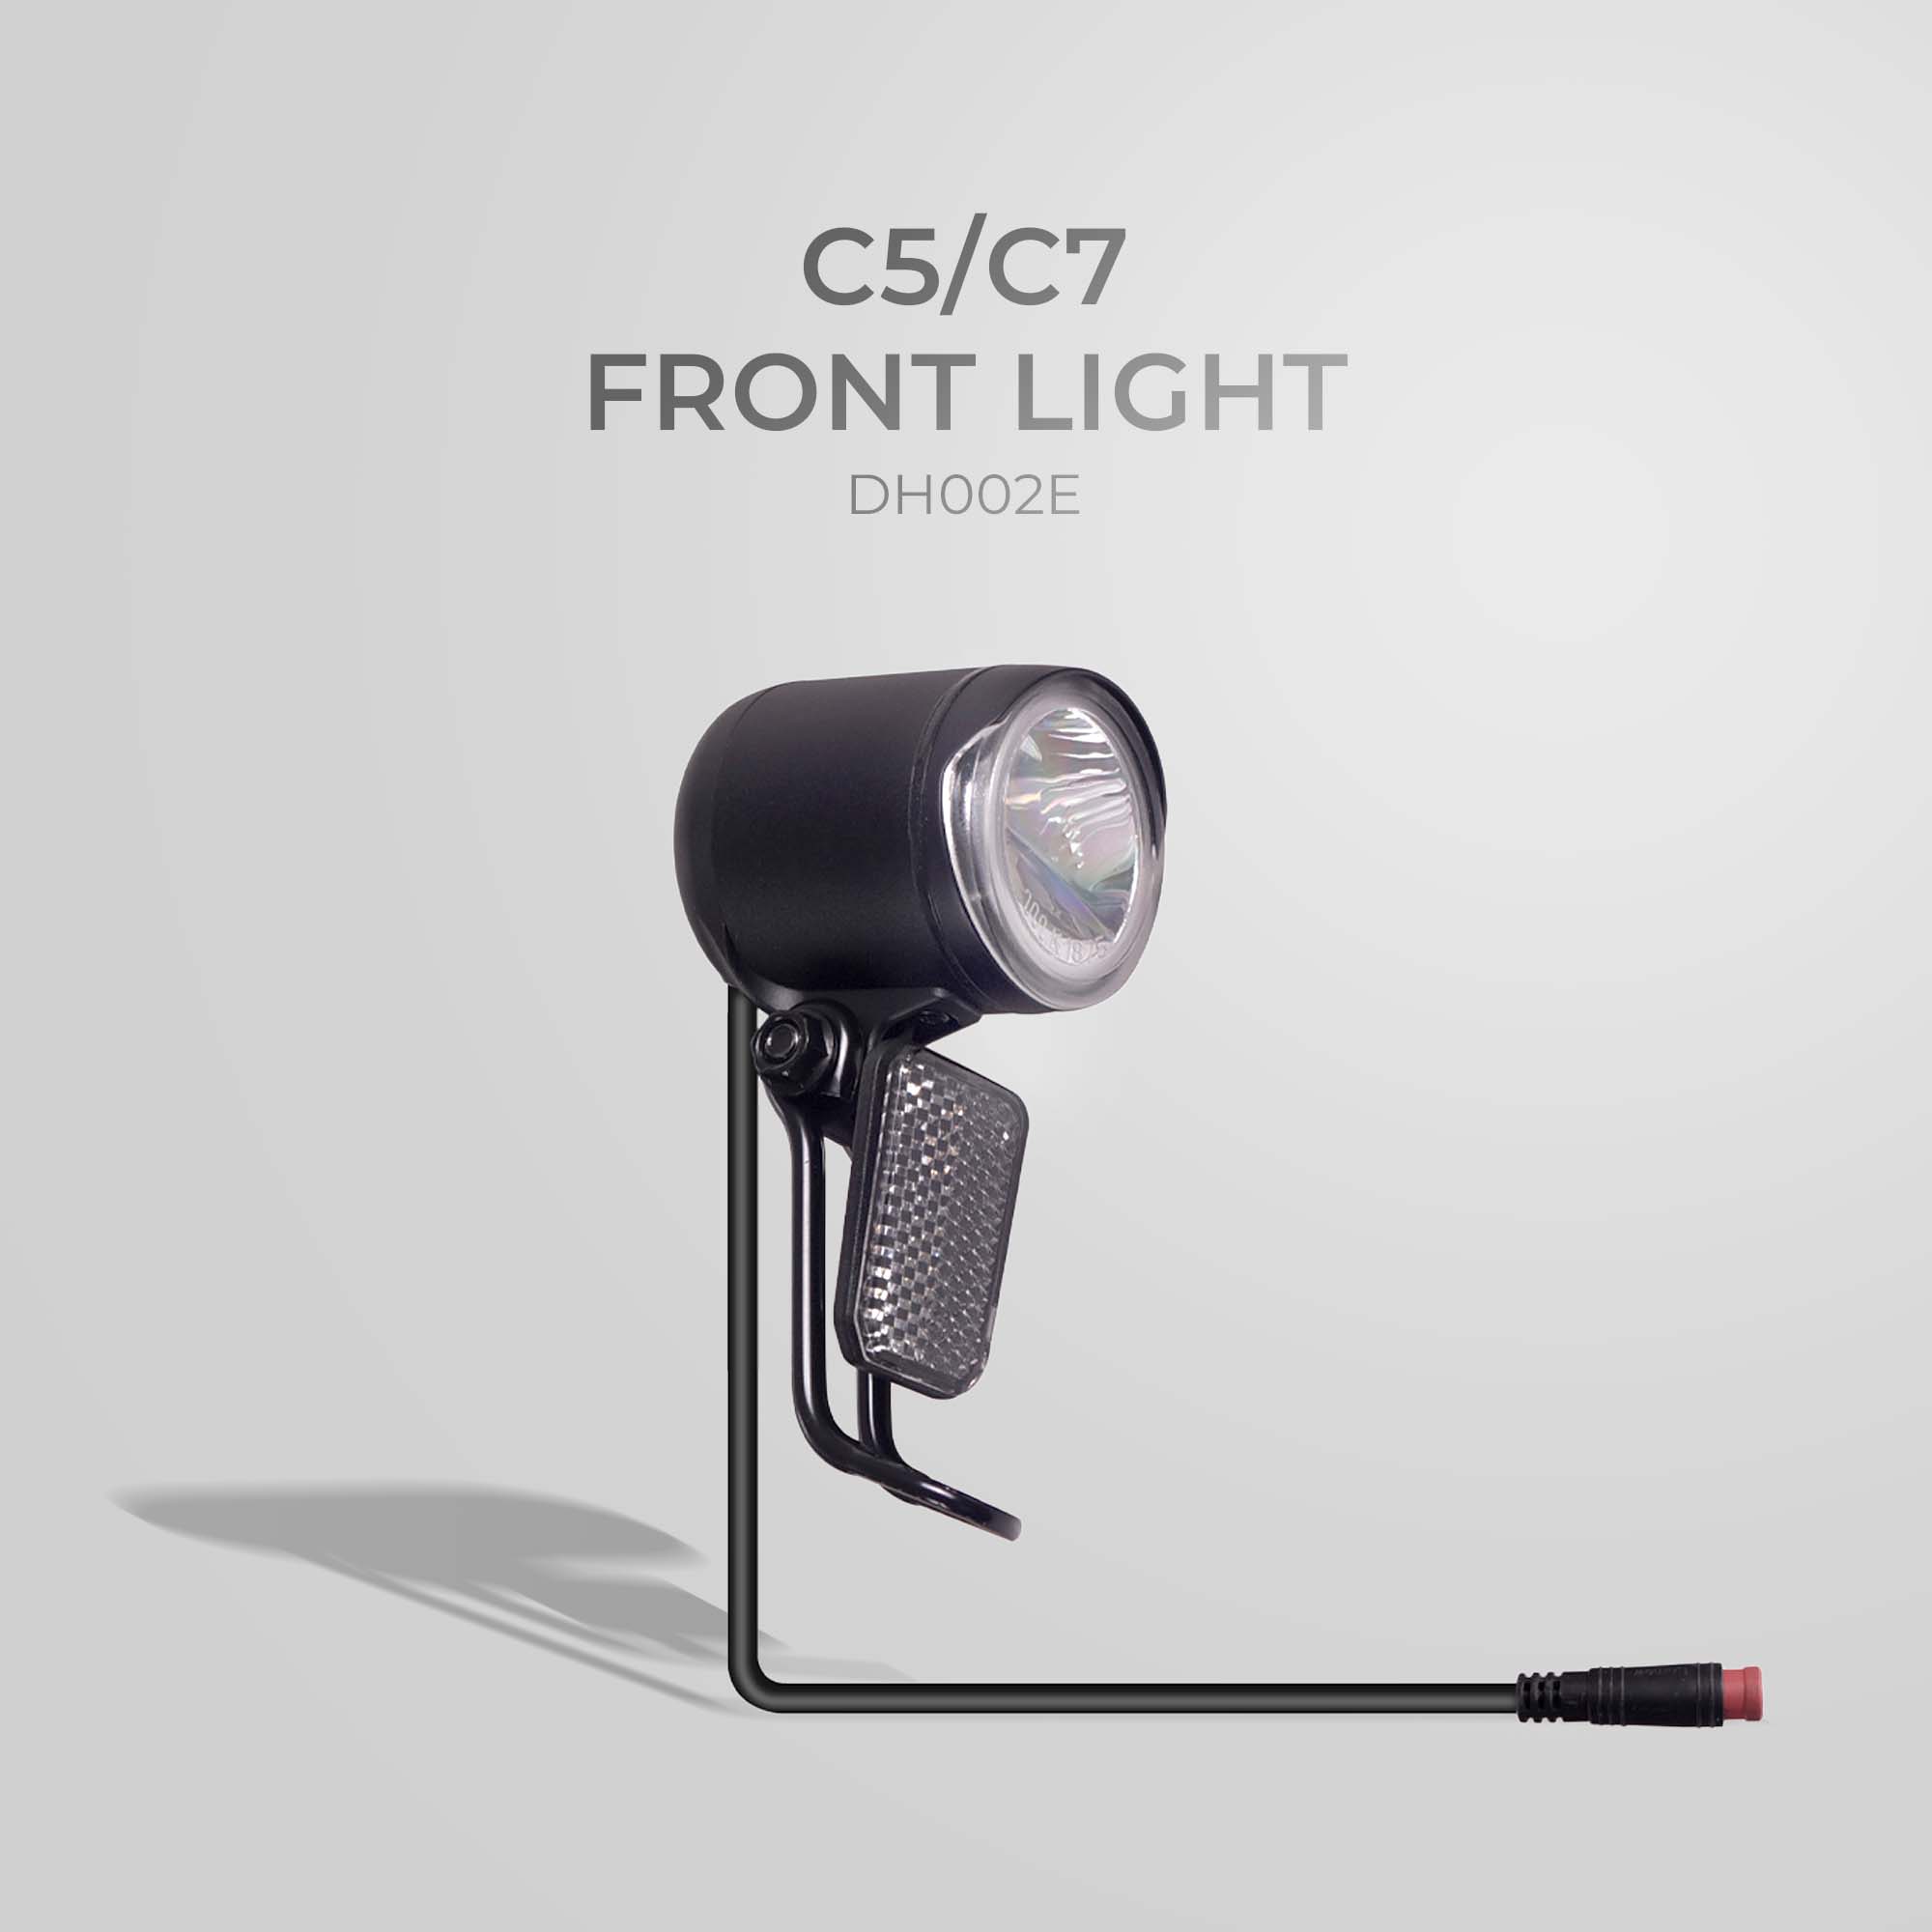 NCM C5/C7 Front Light - DH002E